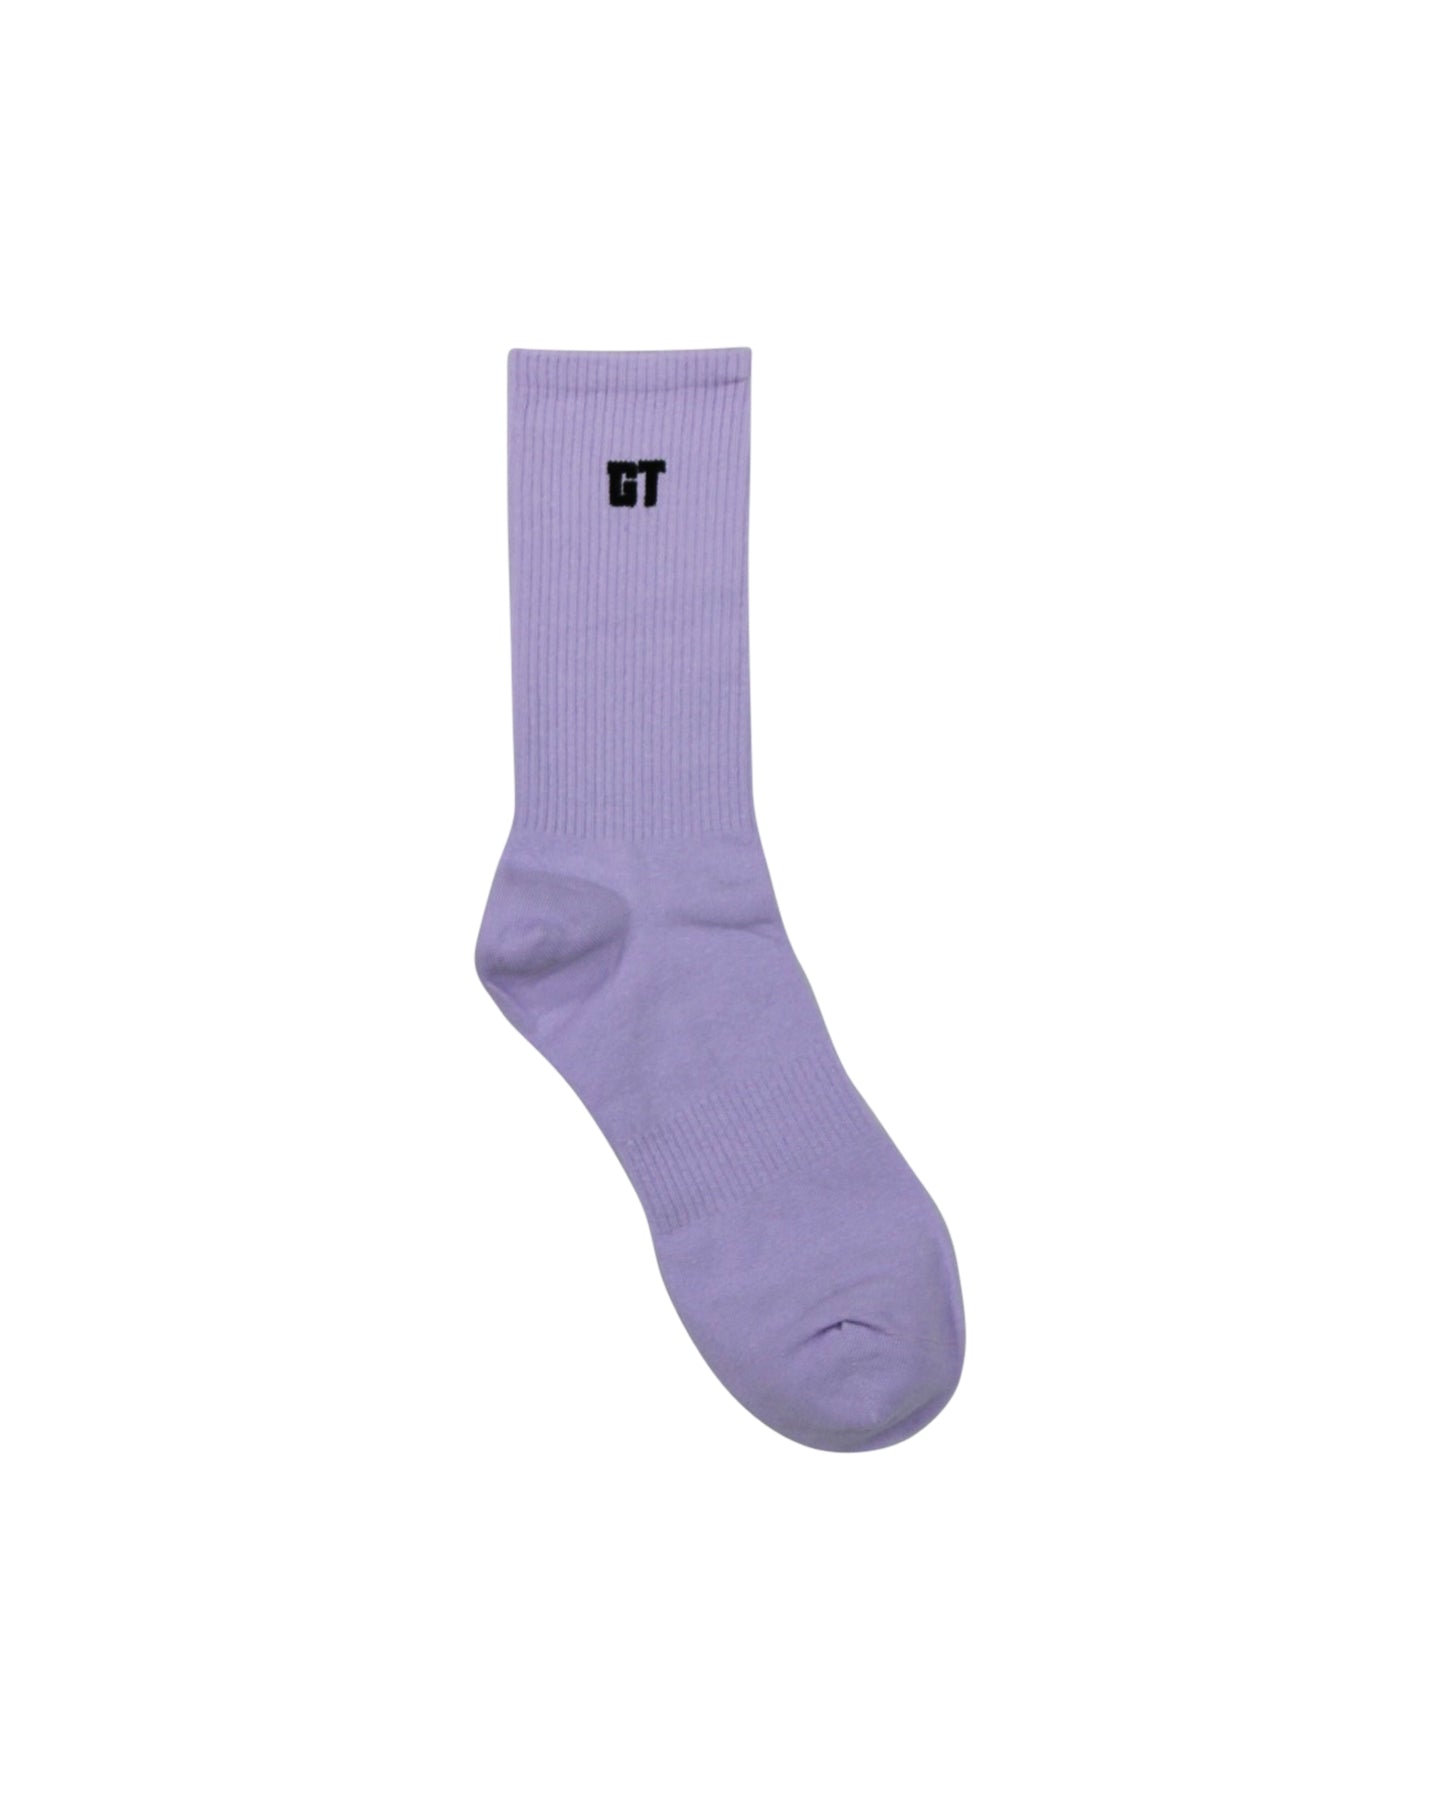 GT Purple Socks